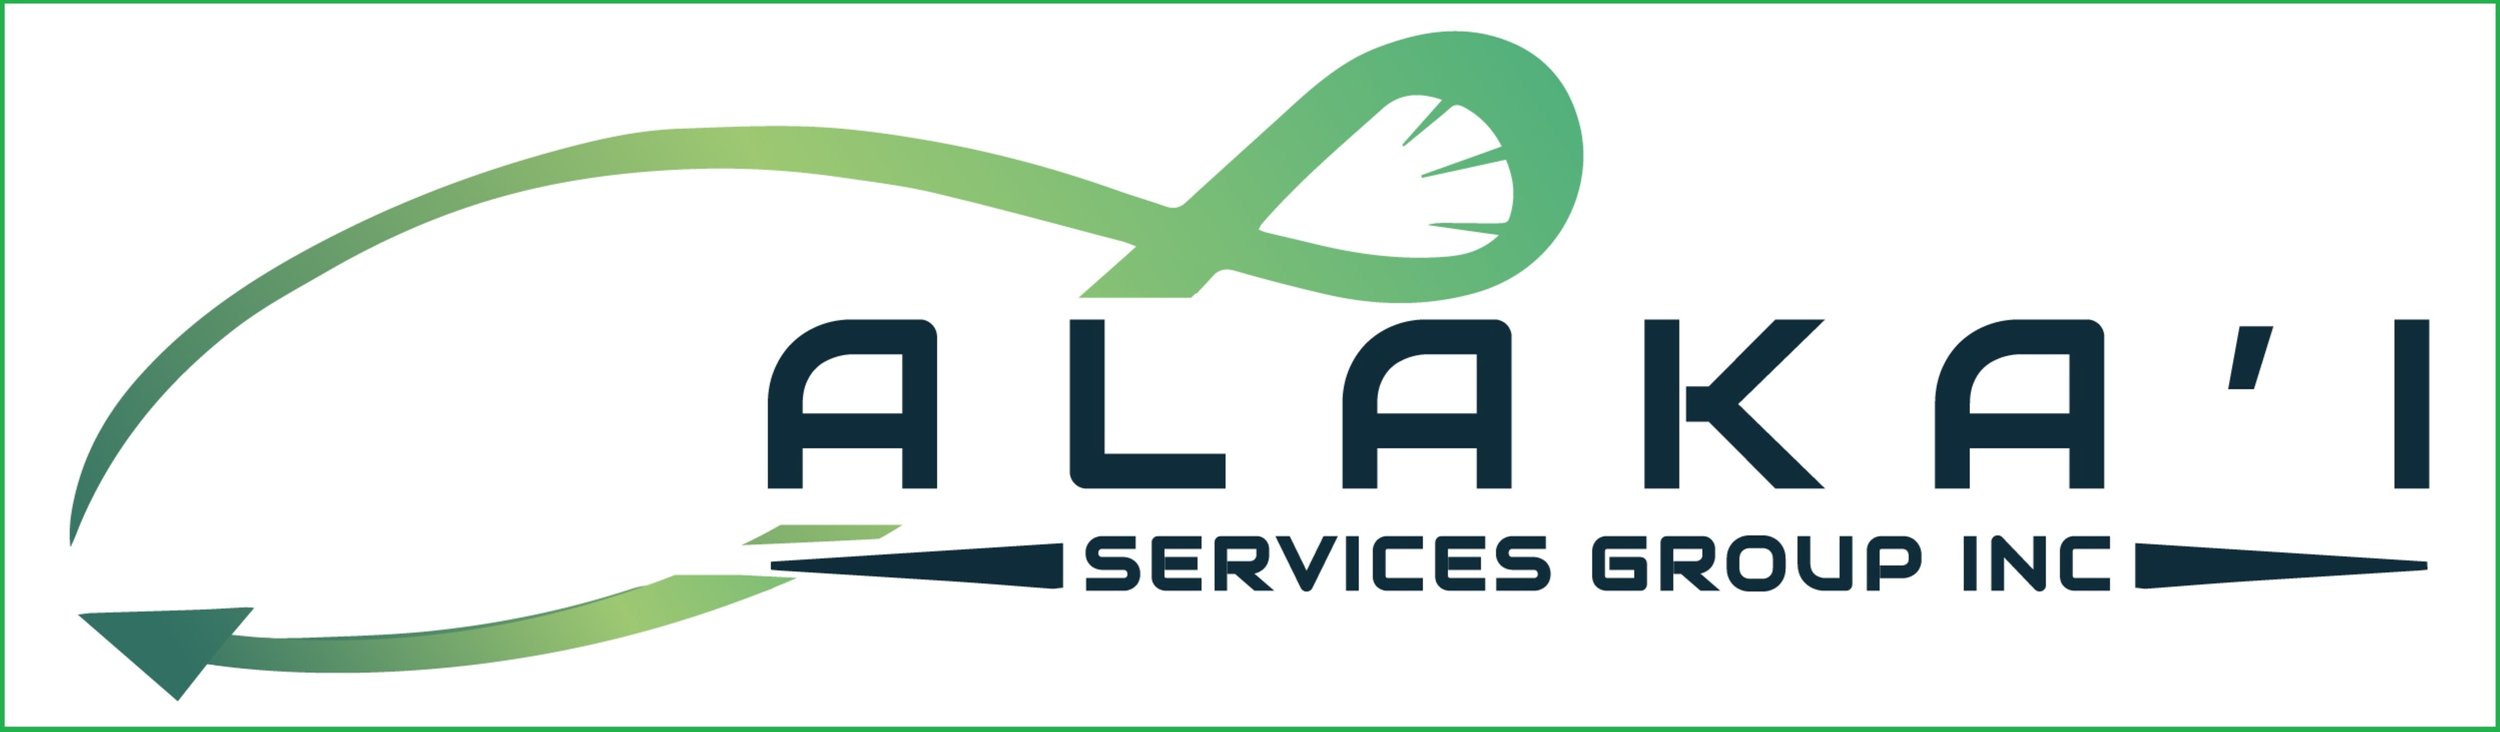 Alaka‘i Services Group Inc. 